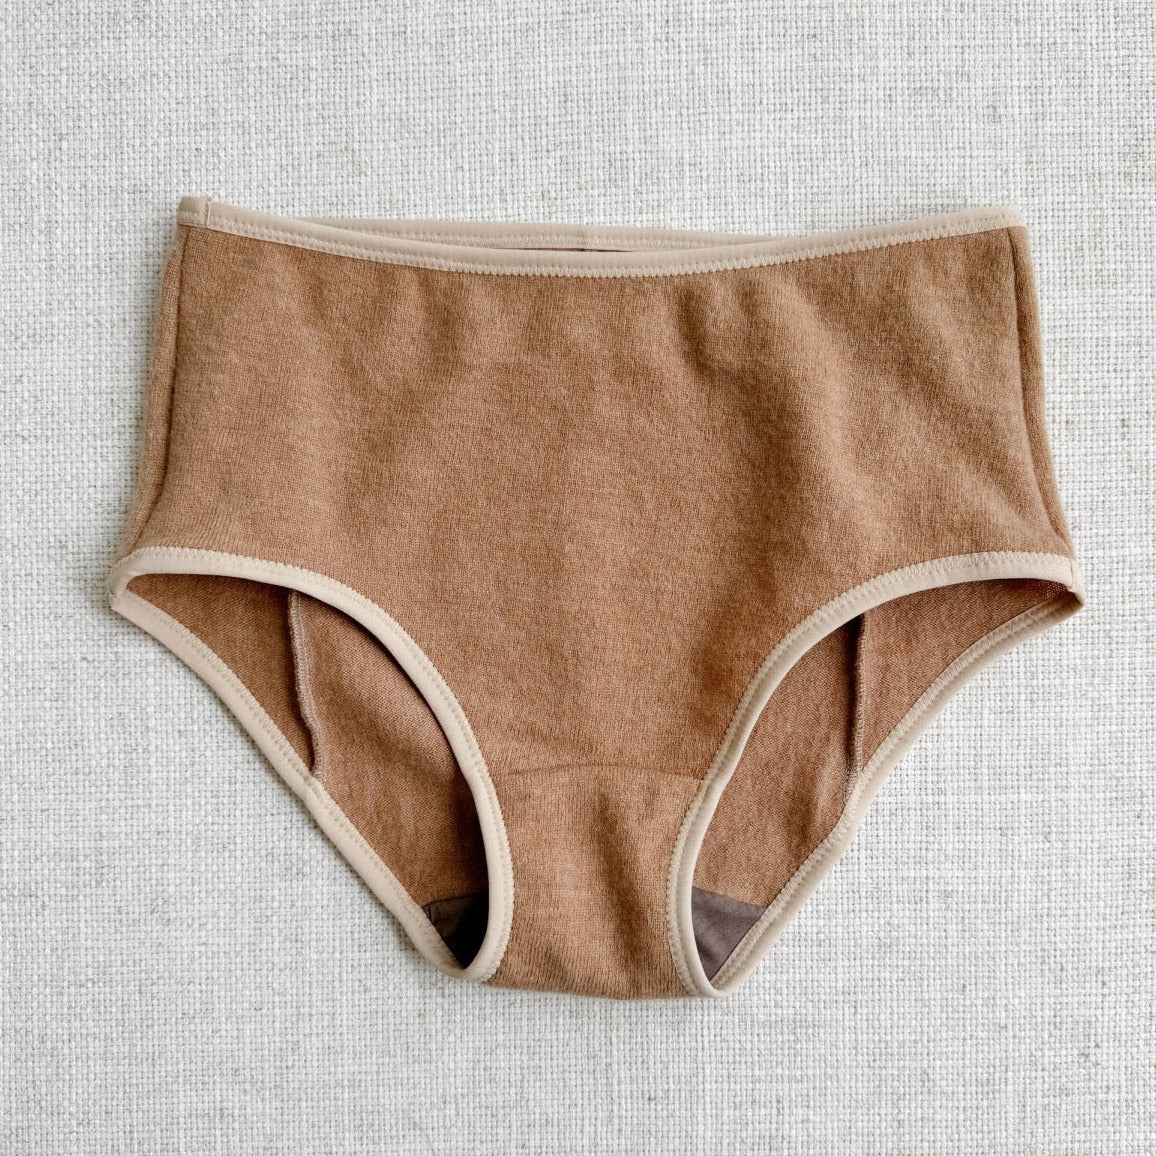 neutral beige cashmere underwear for women, shop best cashmere and wool underwear made in Canada